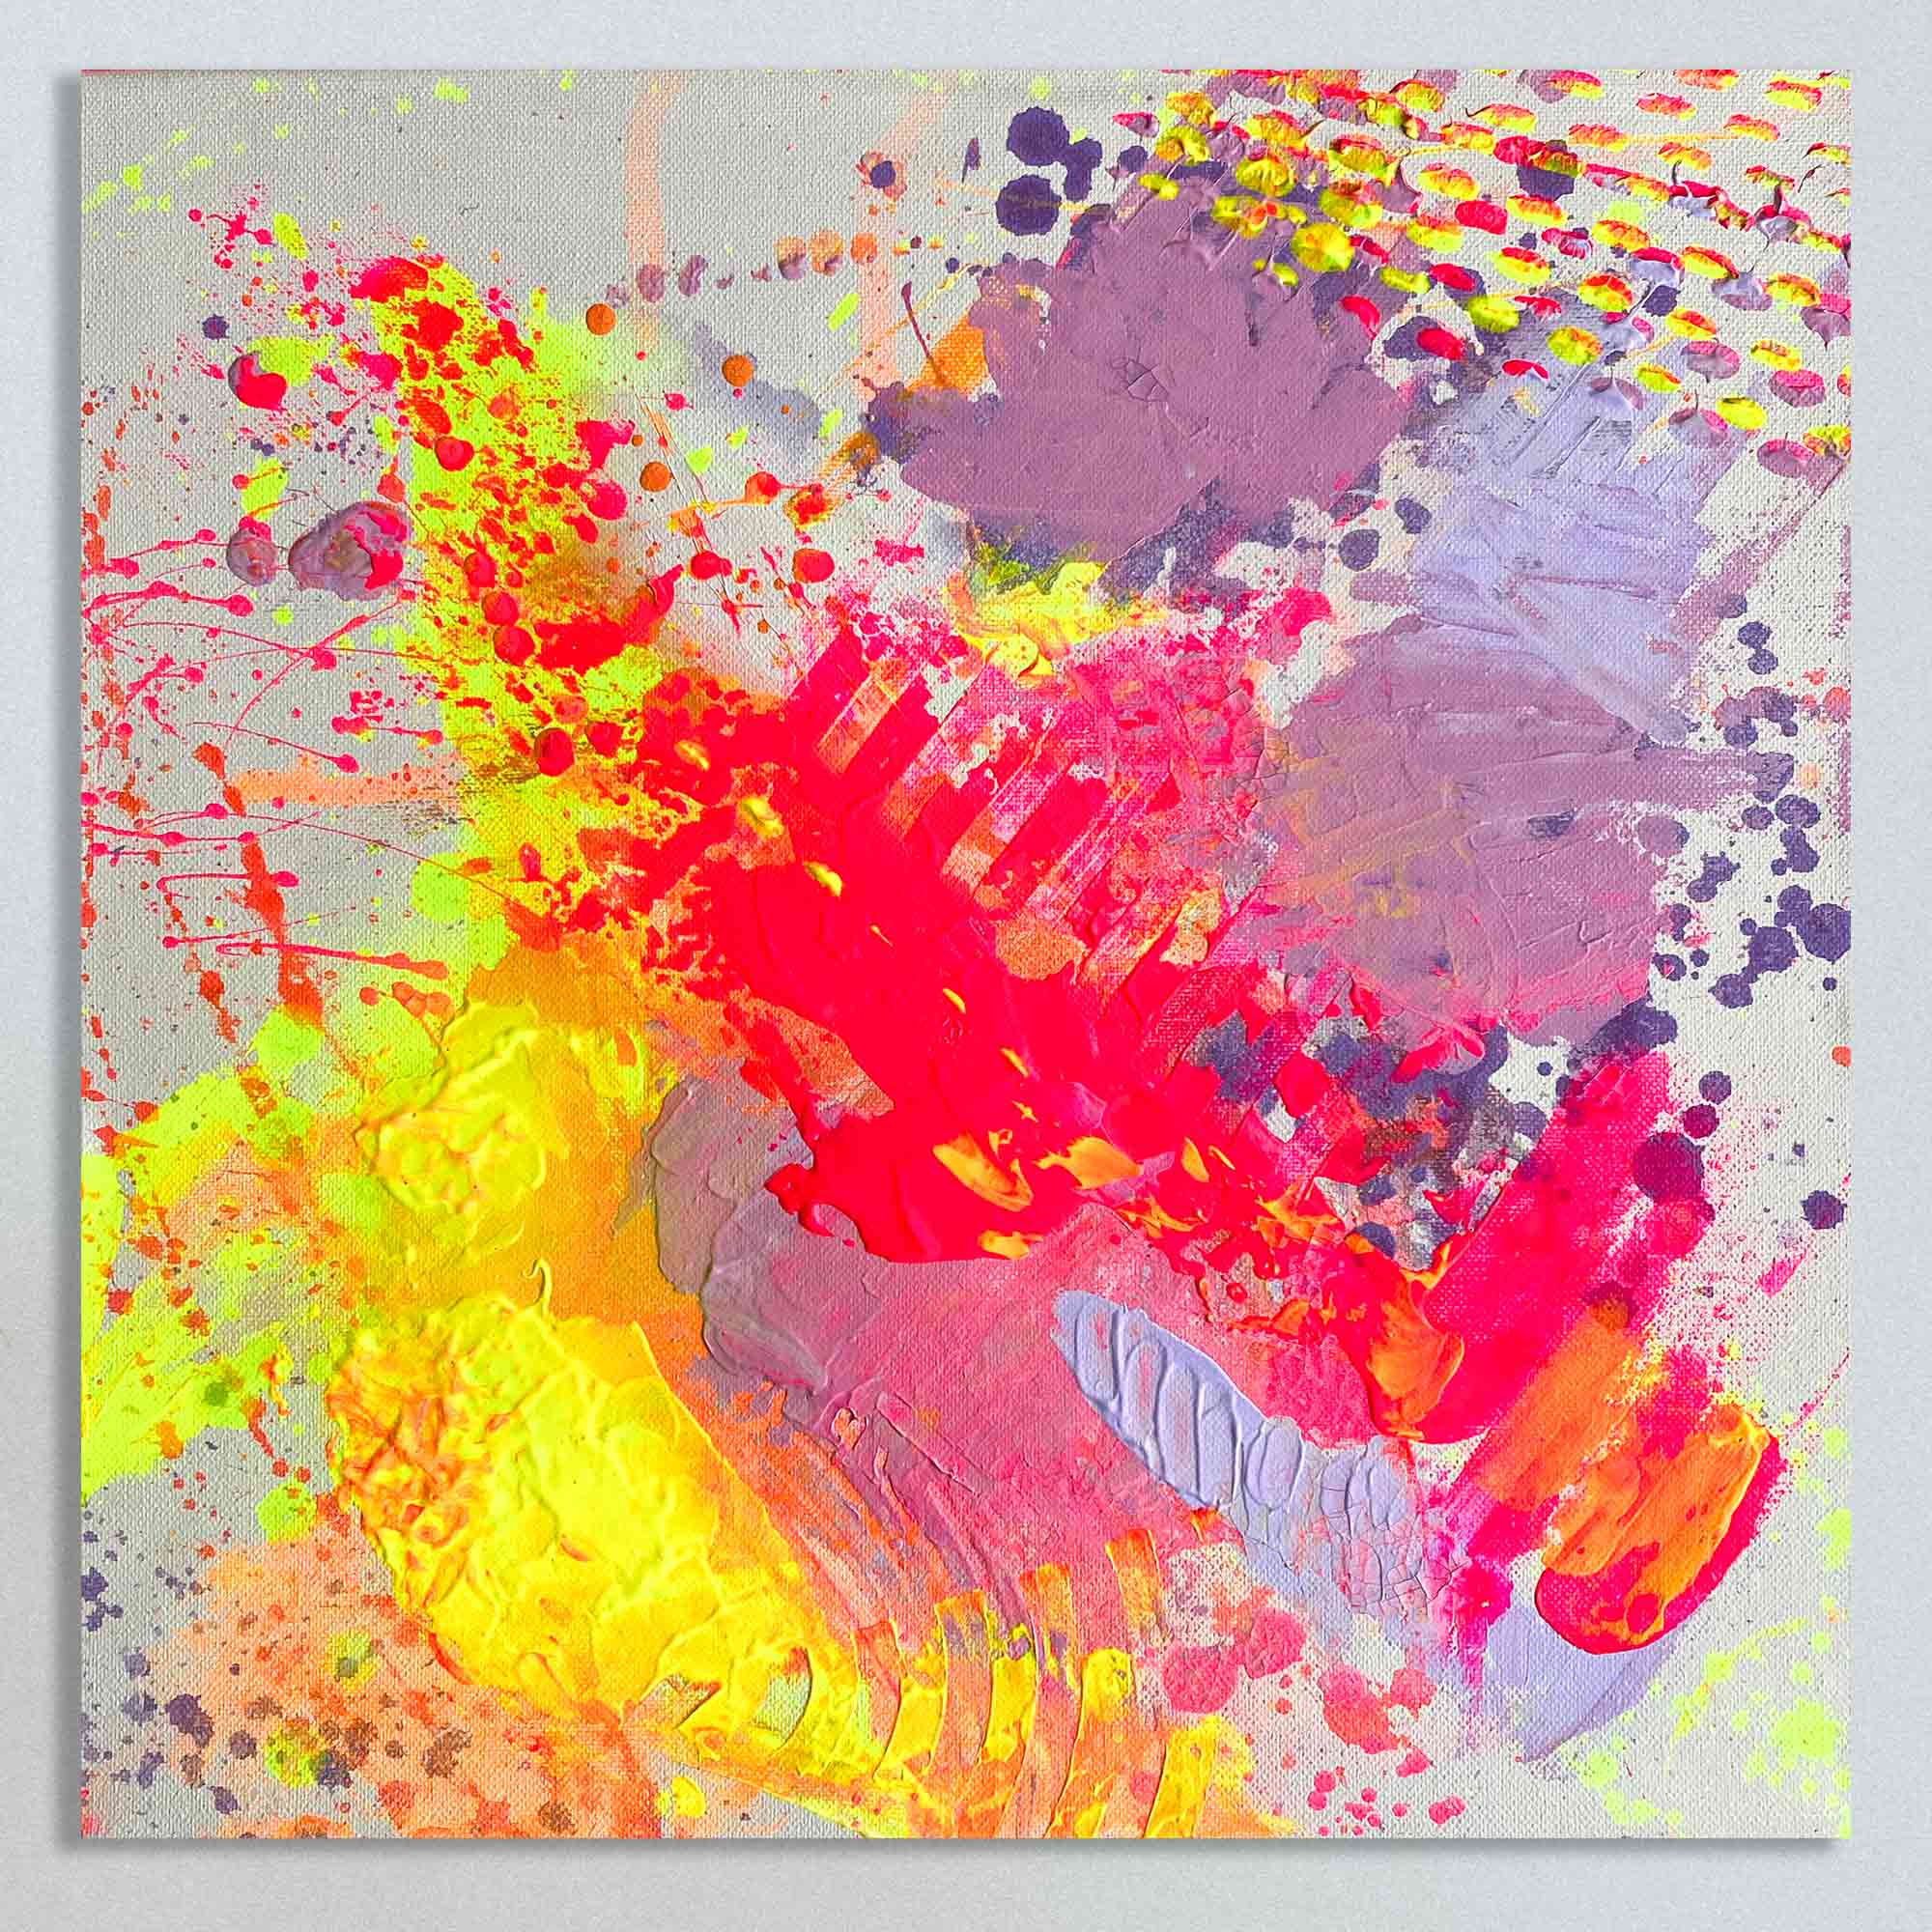 FOOTSTEPS  - ein abstraktes Leinwandbild von Sophie Friederichs. Hauptfarben: Neonpink, Neonhelb, Orange und Lila